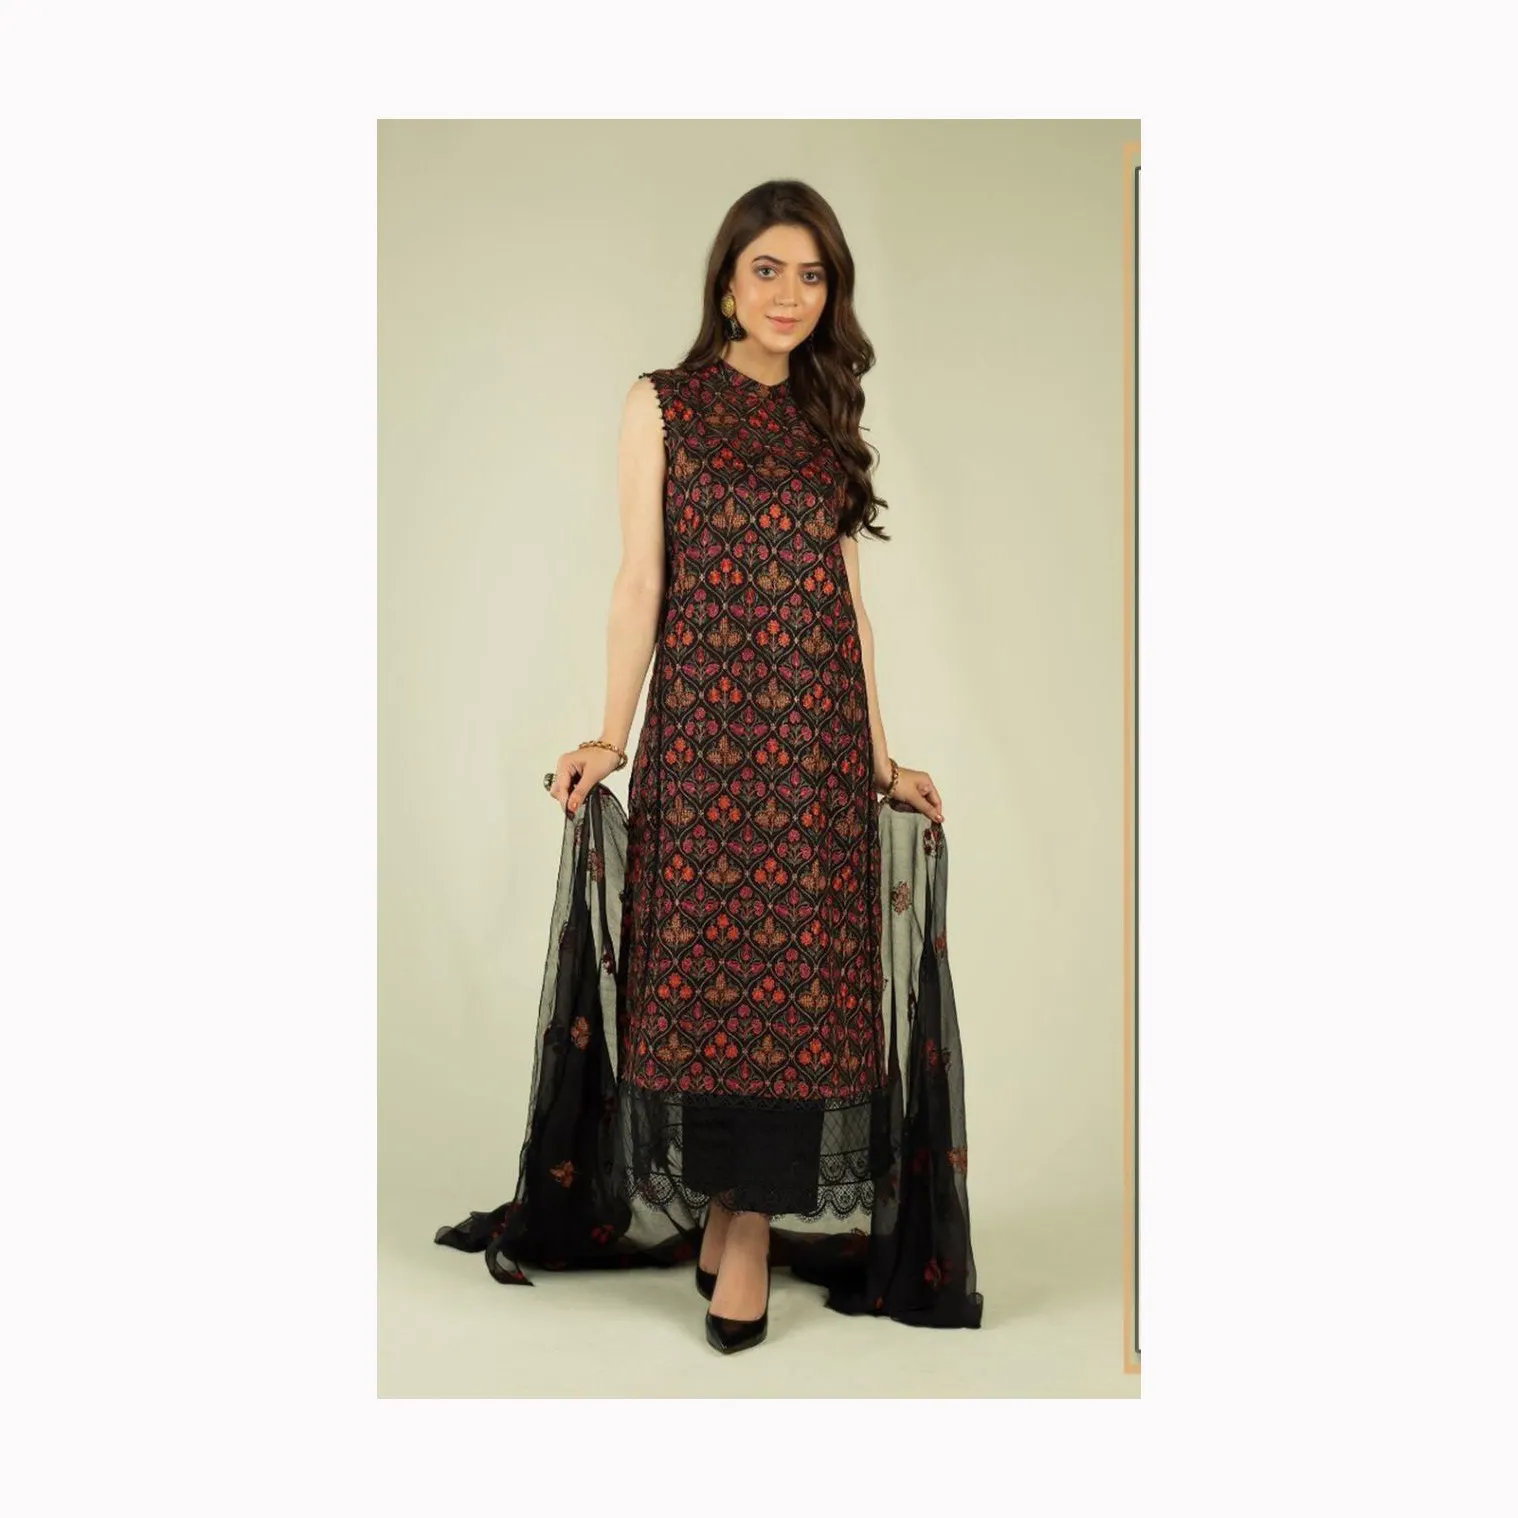 महिलाओं के लिए फैंसी भारतीय शैली लहंगा चोली शलवार कमीज और फ्रॉक डिजाइन शीर्ष गुणवत्ता वाले फैशन वियर